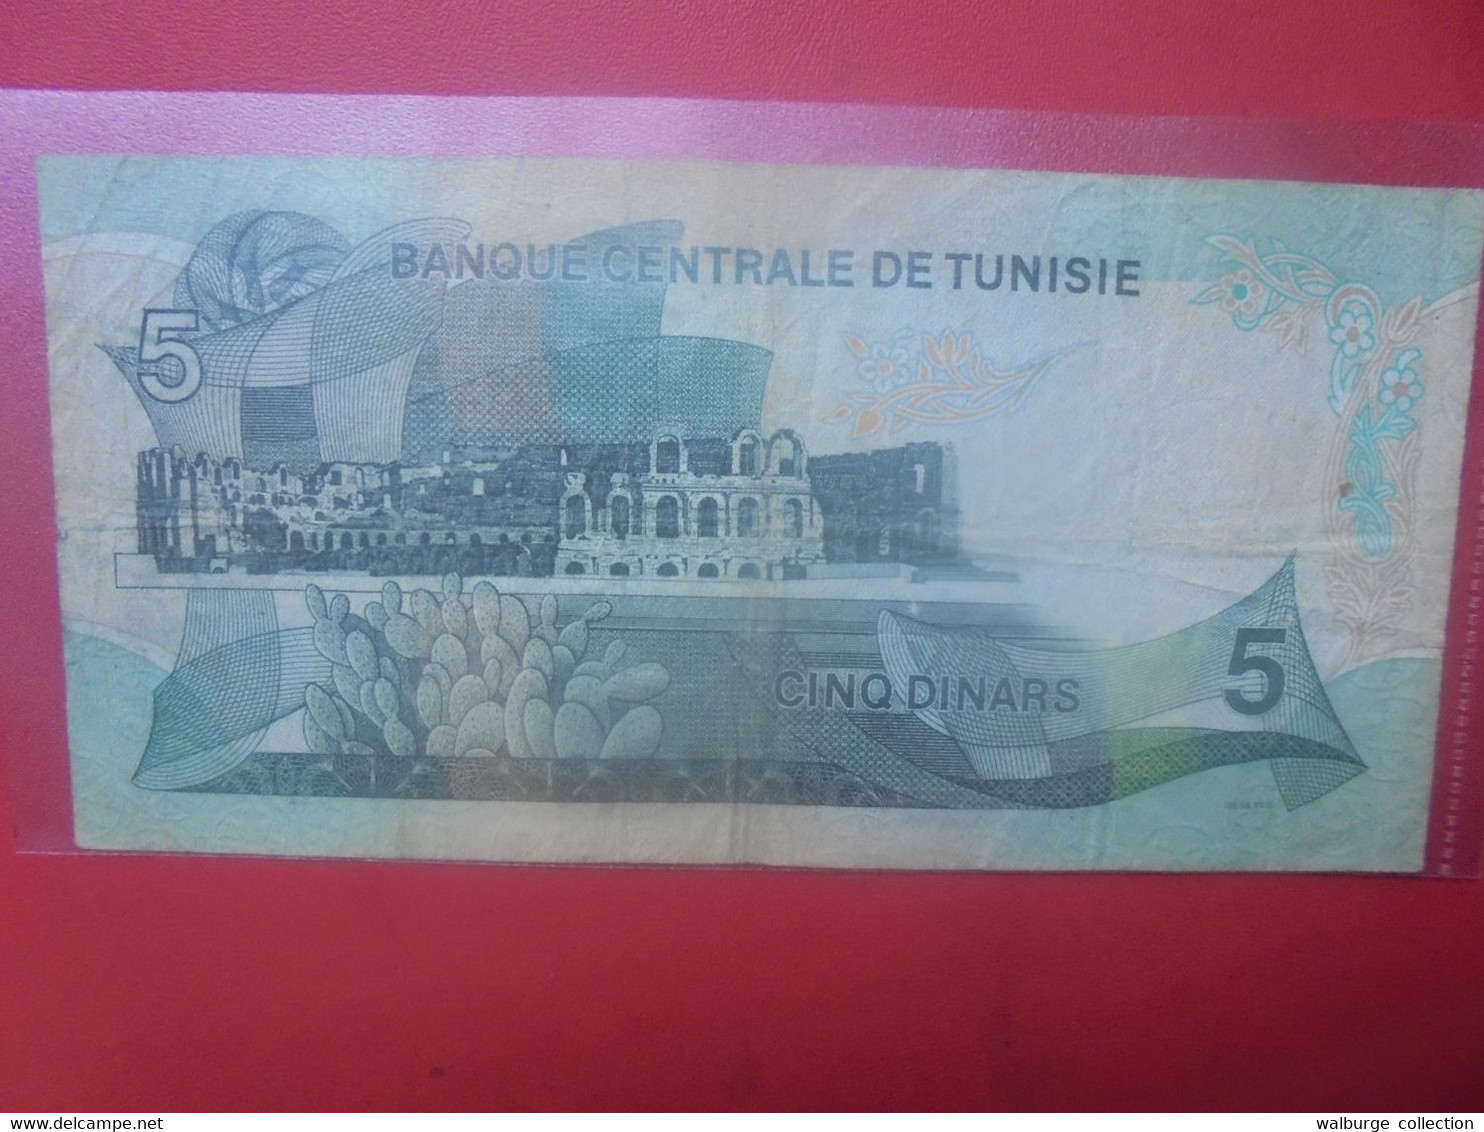 TUNISIE 5 DINARS 1972 Circuler (L.17) - Tunisie